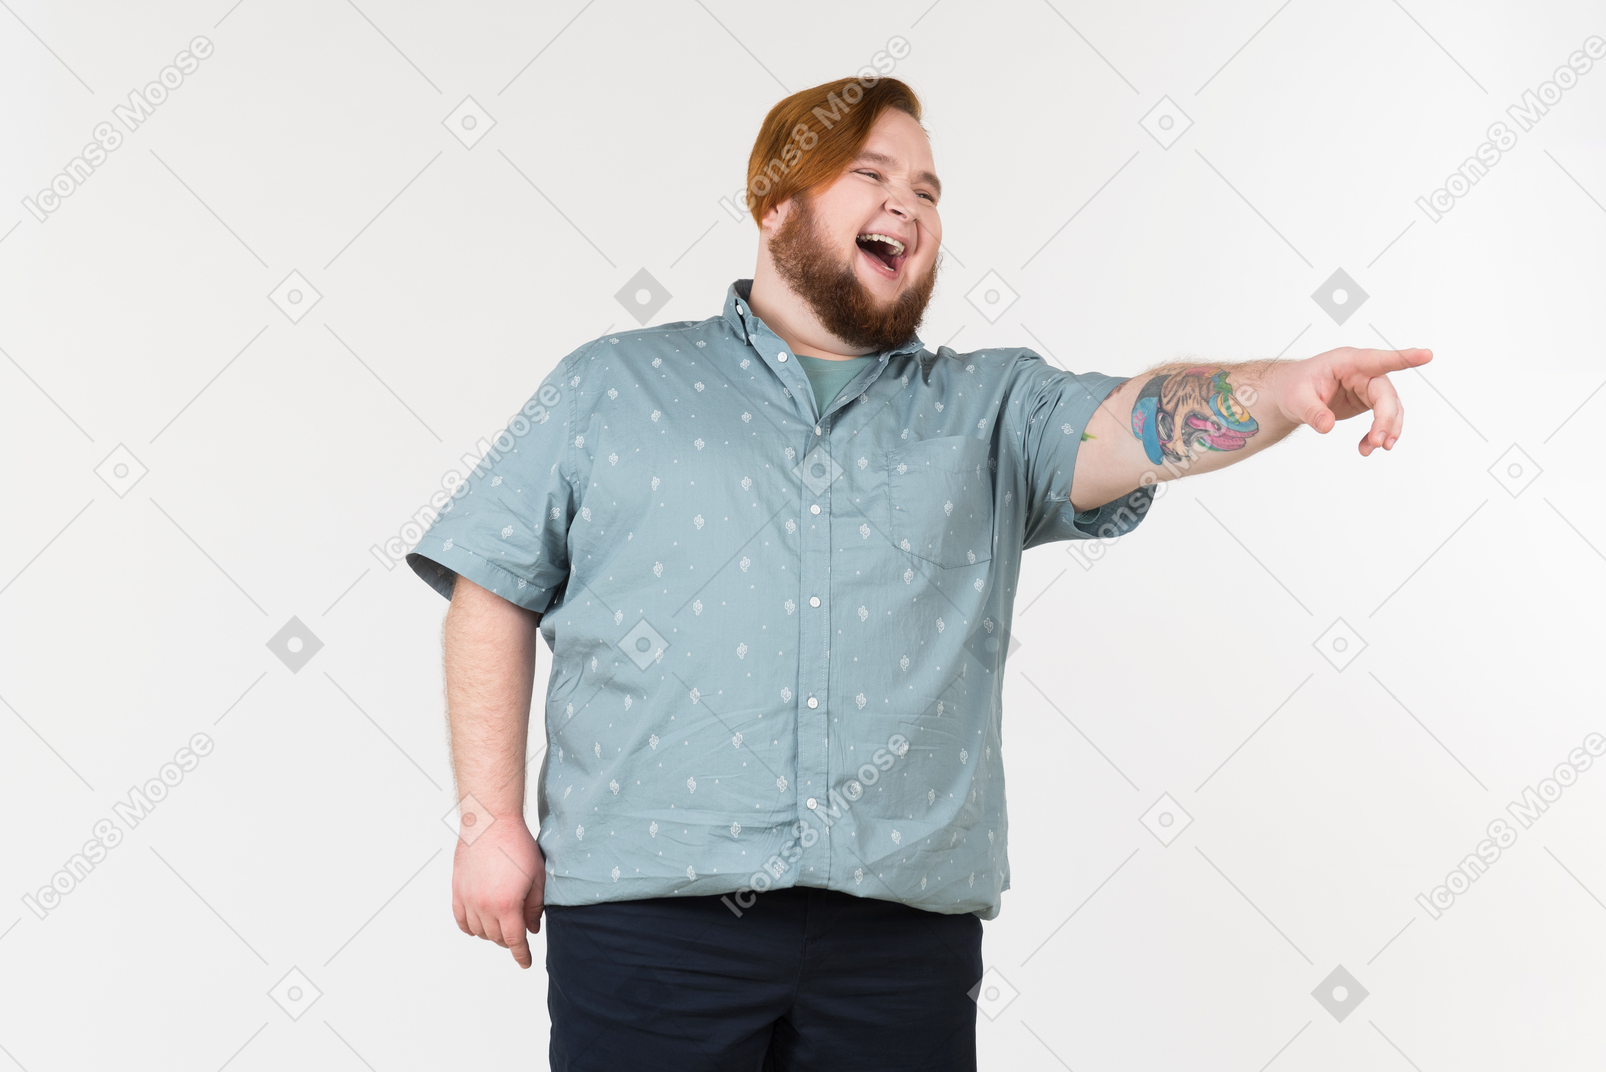 Un uomo grasso che punta il dito verso qualcosa e ride